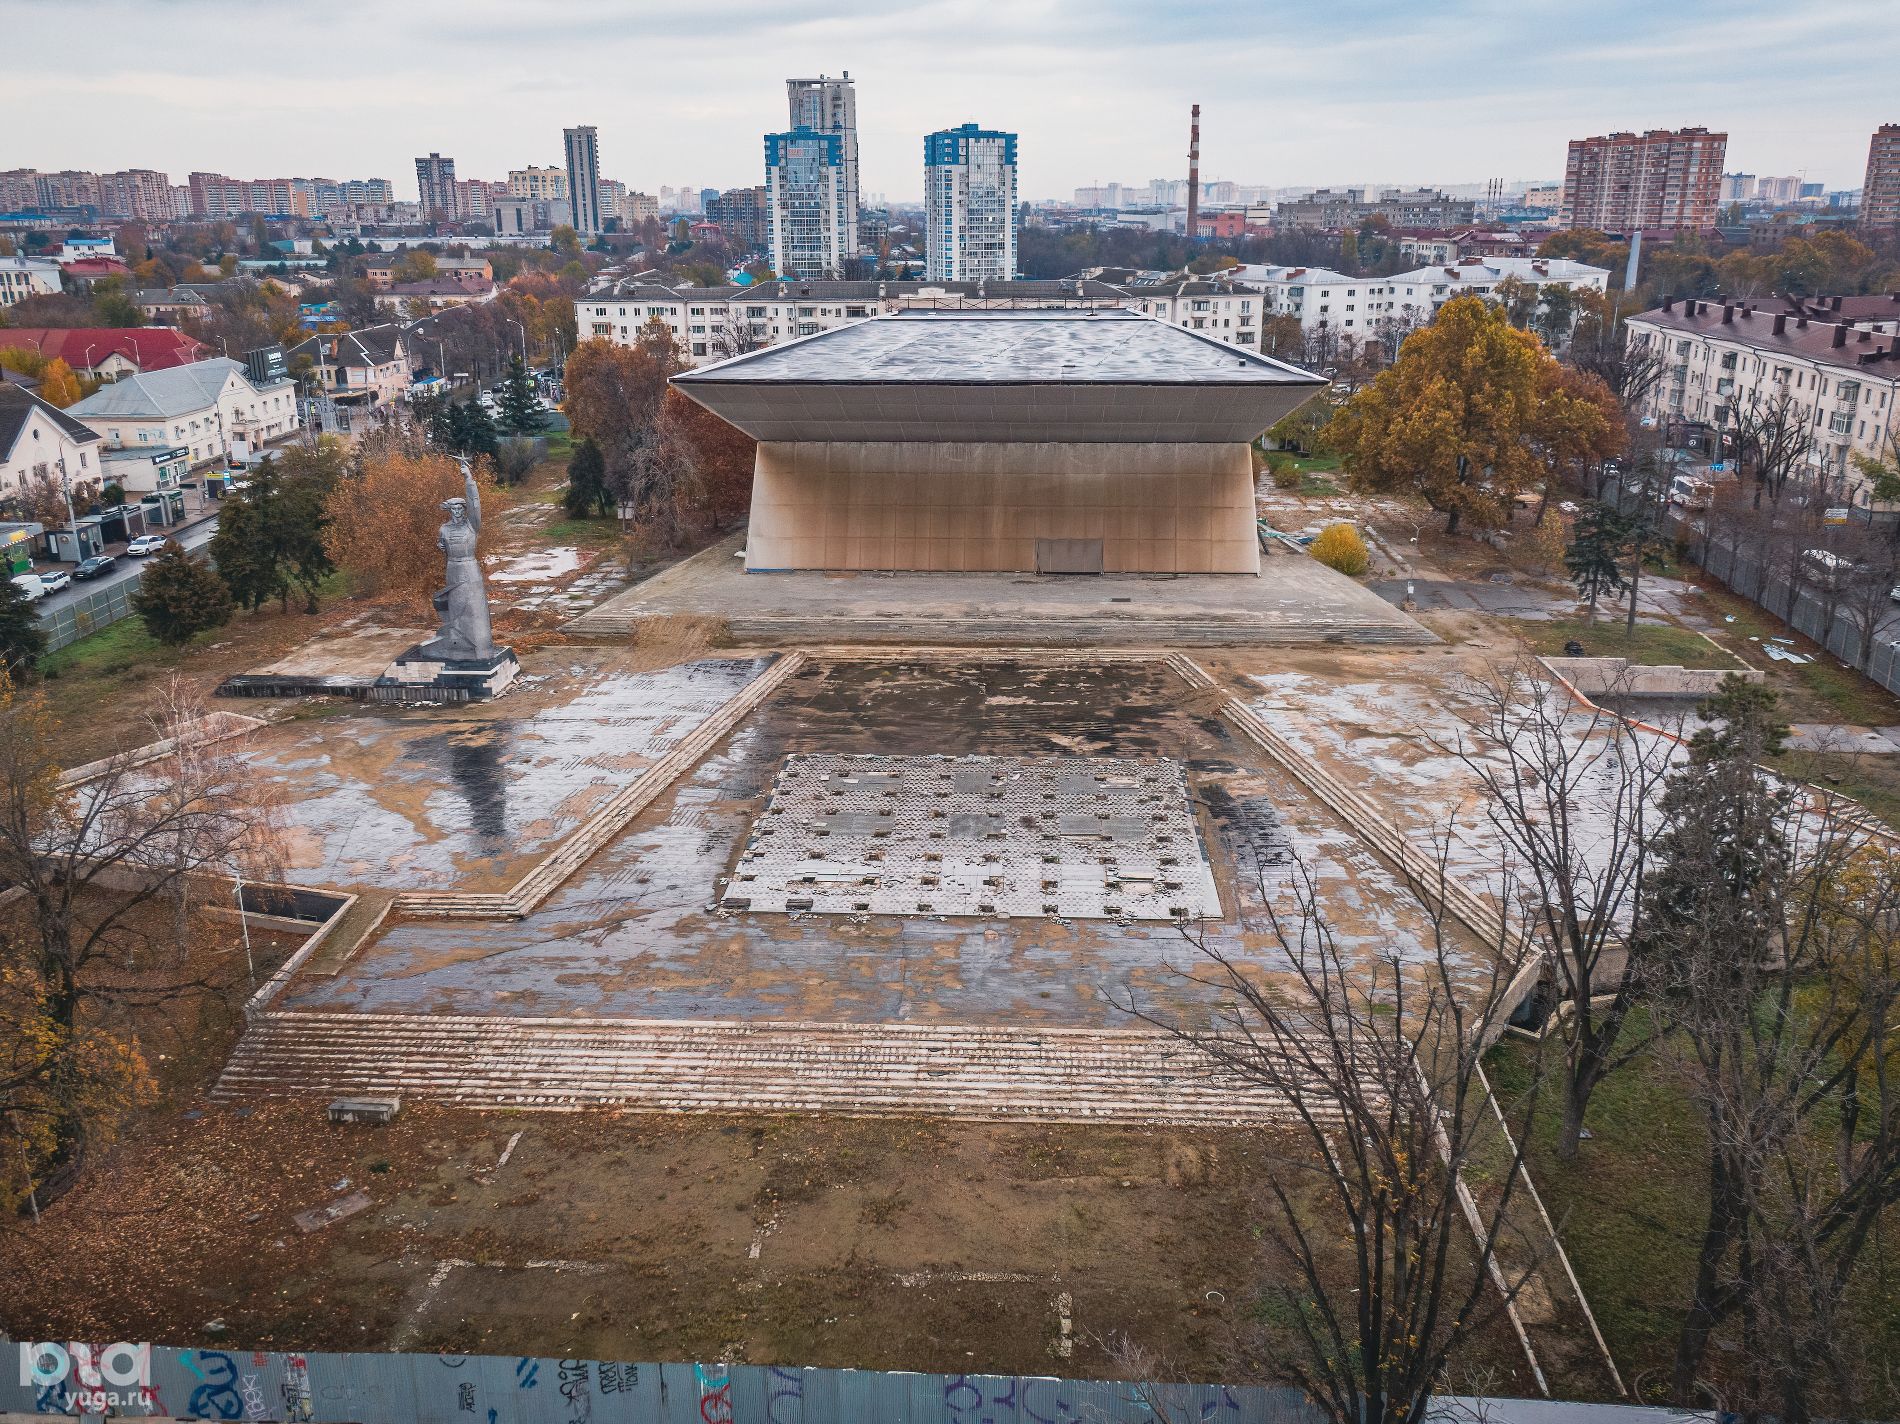 Кинотеатр «Аврора». Вид сверху © Фото Антона Быкова, Юга.ру